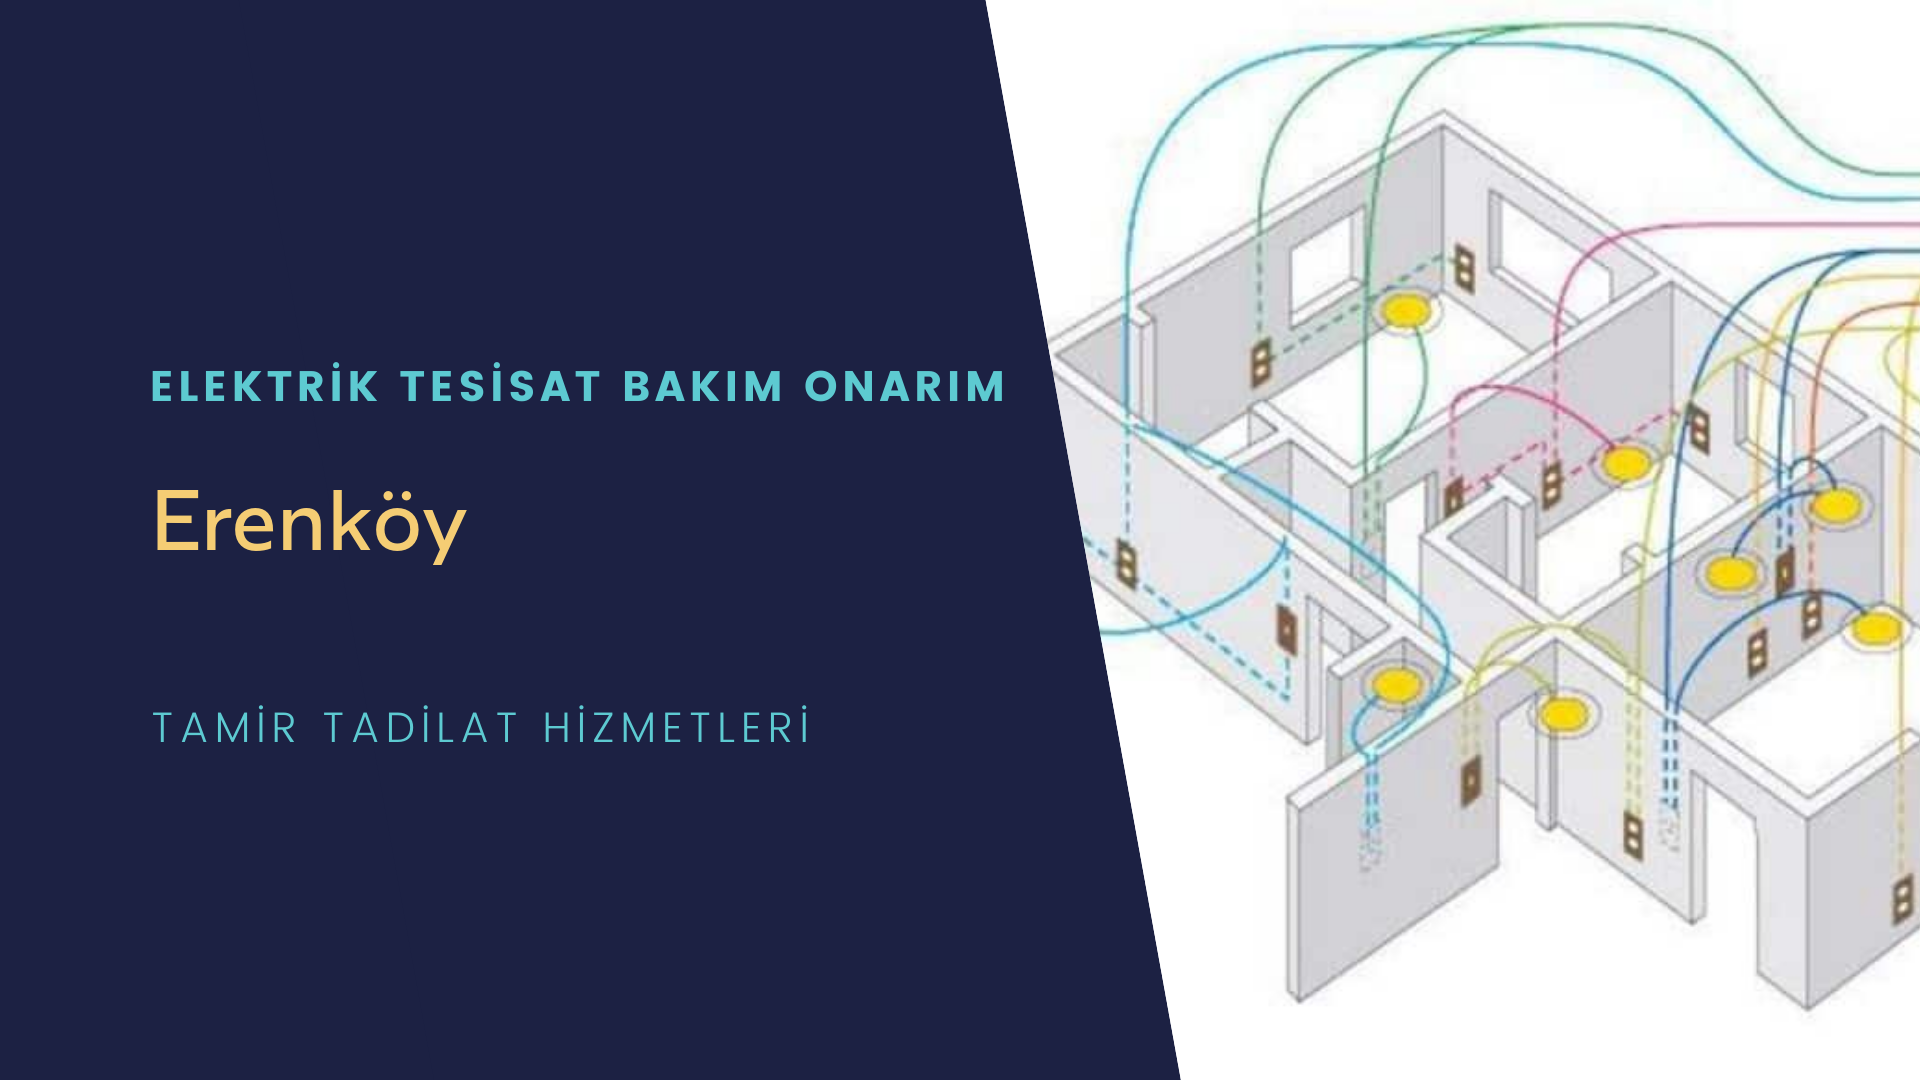 Erenköy Mhl  elektrik tesisatı ustalarımı arıyorsunuz doğru adrestenizi Erenköy Mhl elektrik tesisatı ustalarımız 7/24 sizlere hizmet vermekten mutluluk duyar.